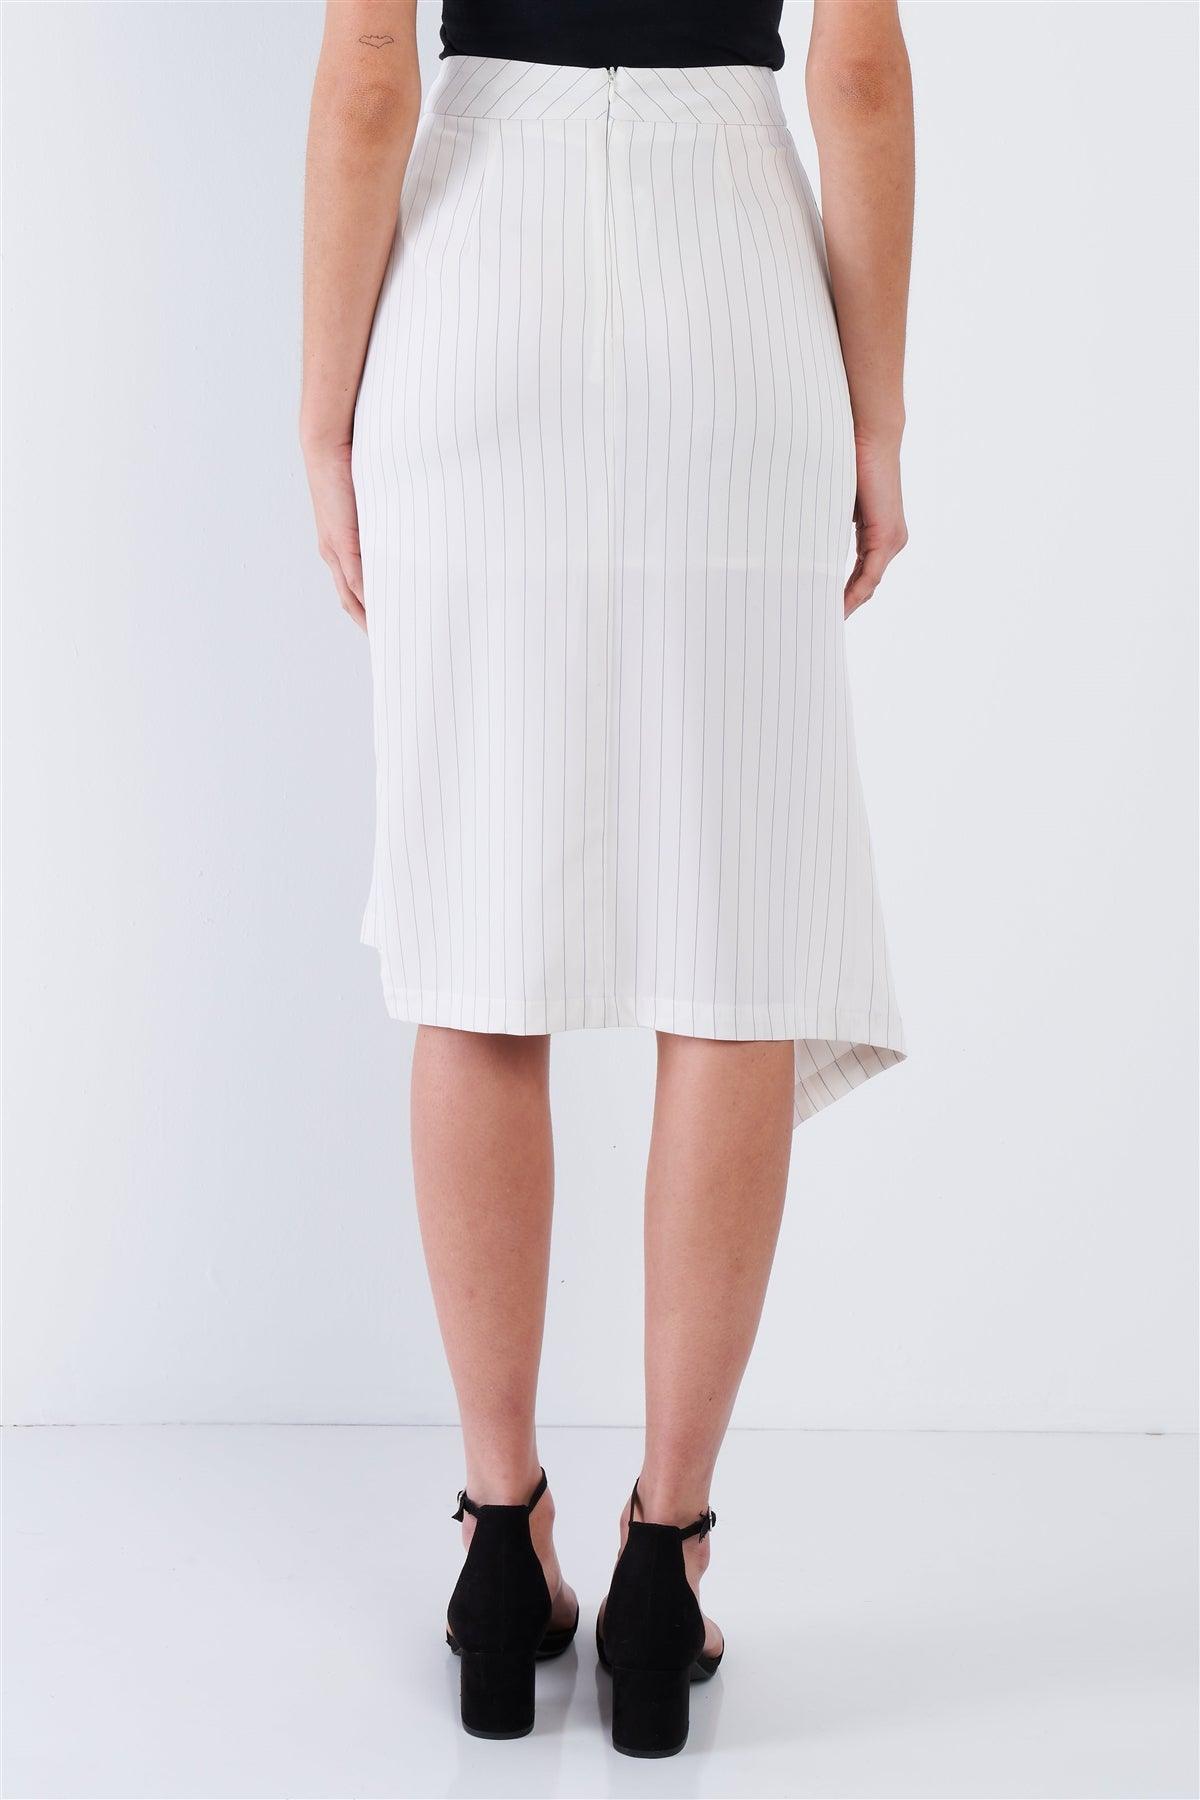 Off-White Pinstripe Cut Out Asymmetrical Hem Bodycon Midi Skirt